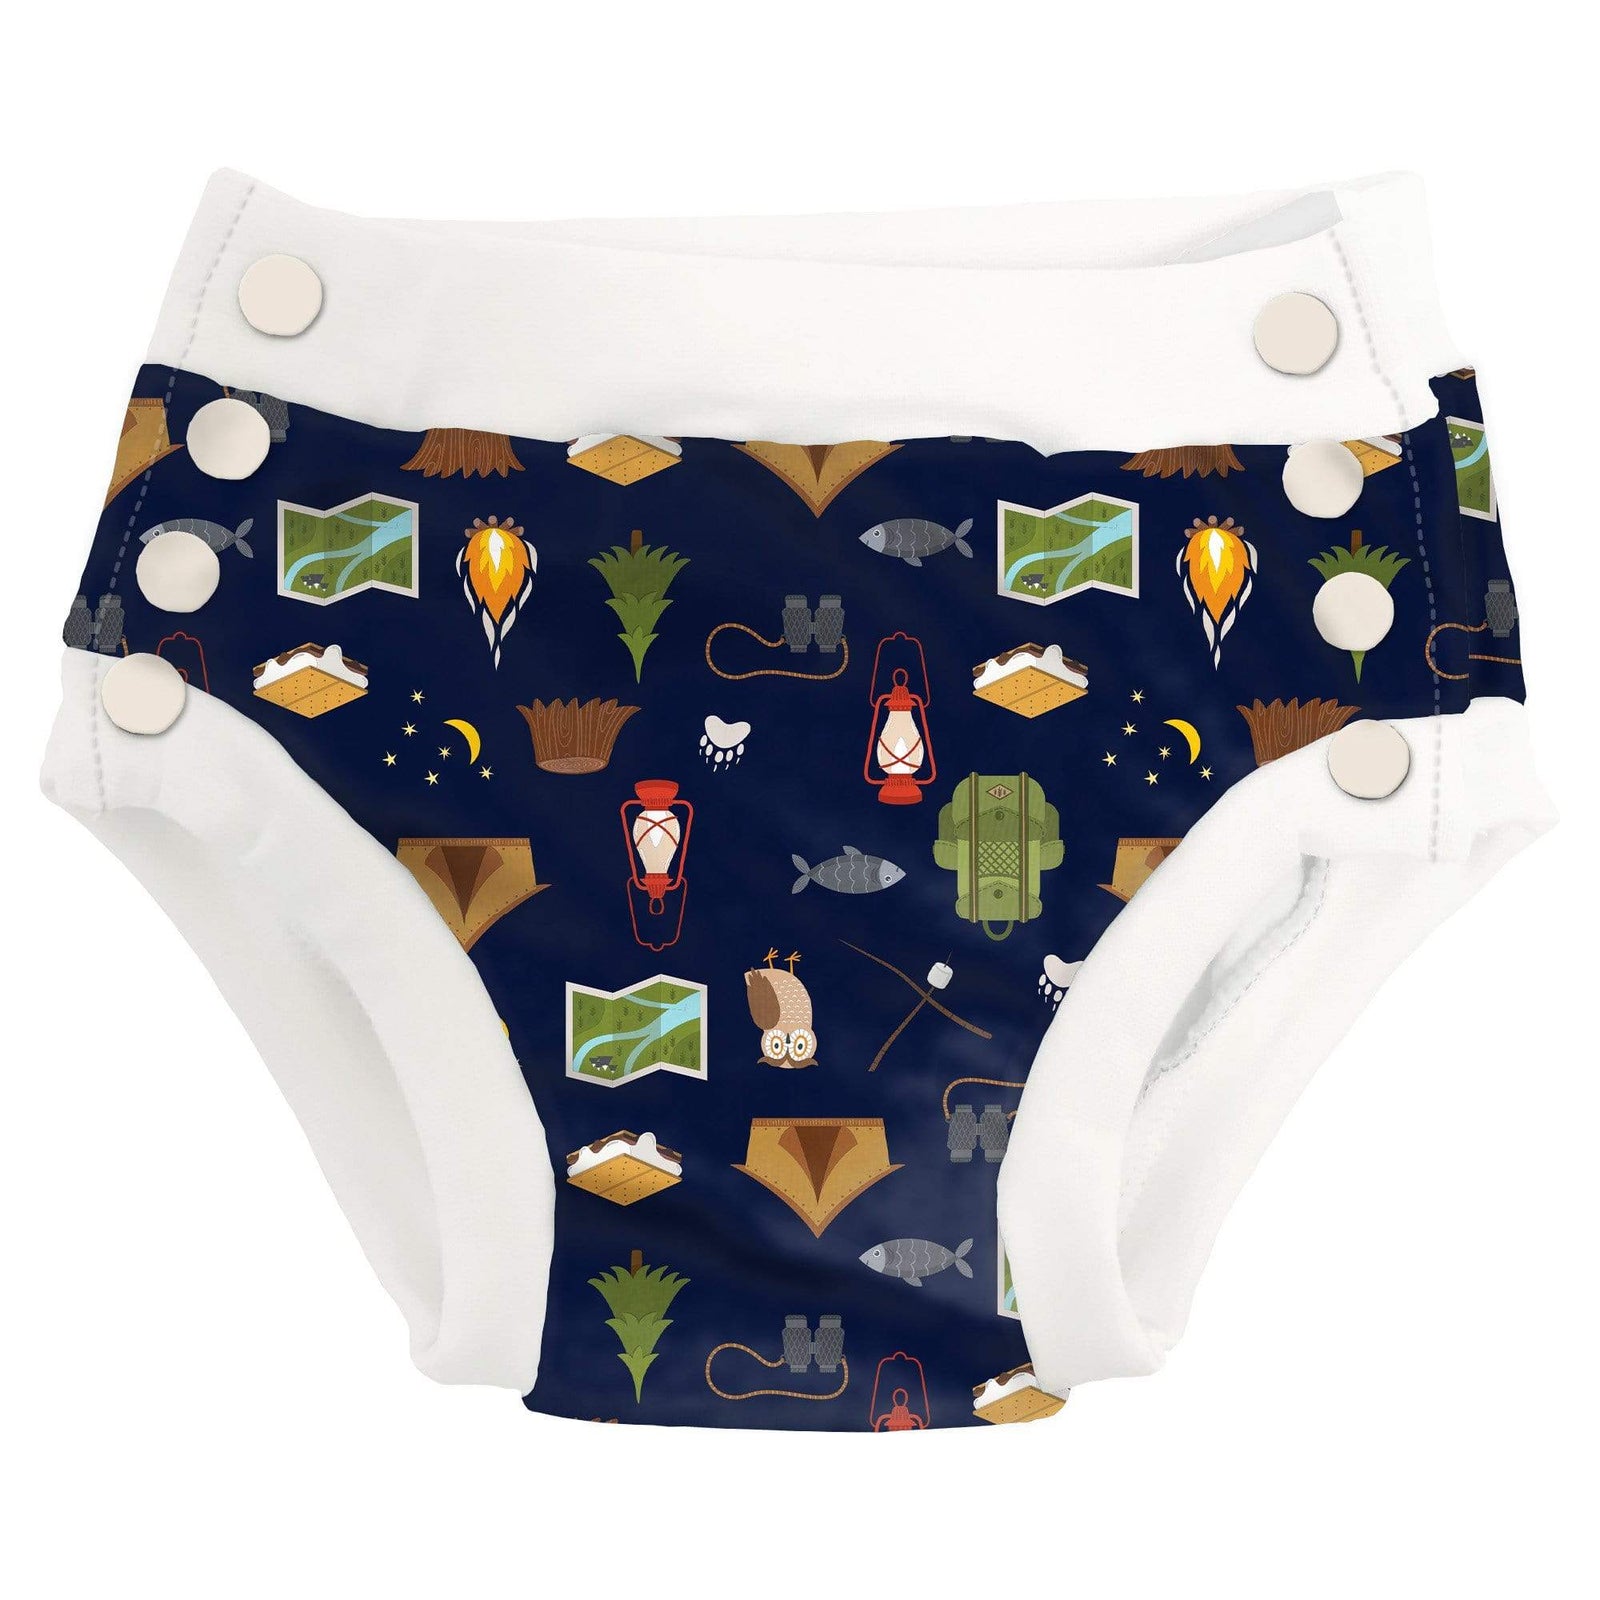 Moana Toddler Girls Training Pants in Toddler Girls Underwear